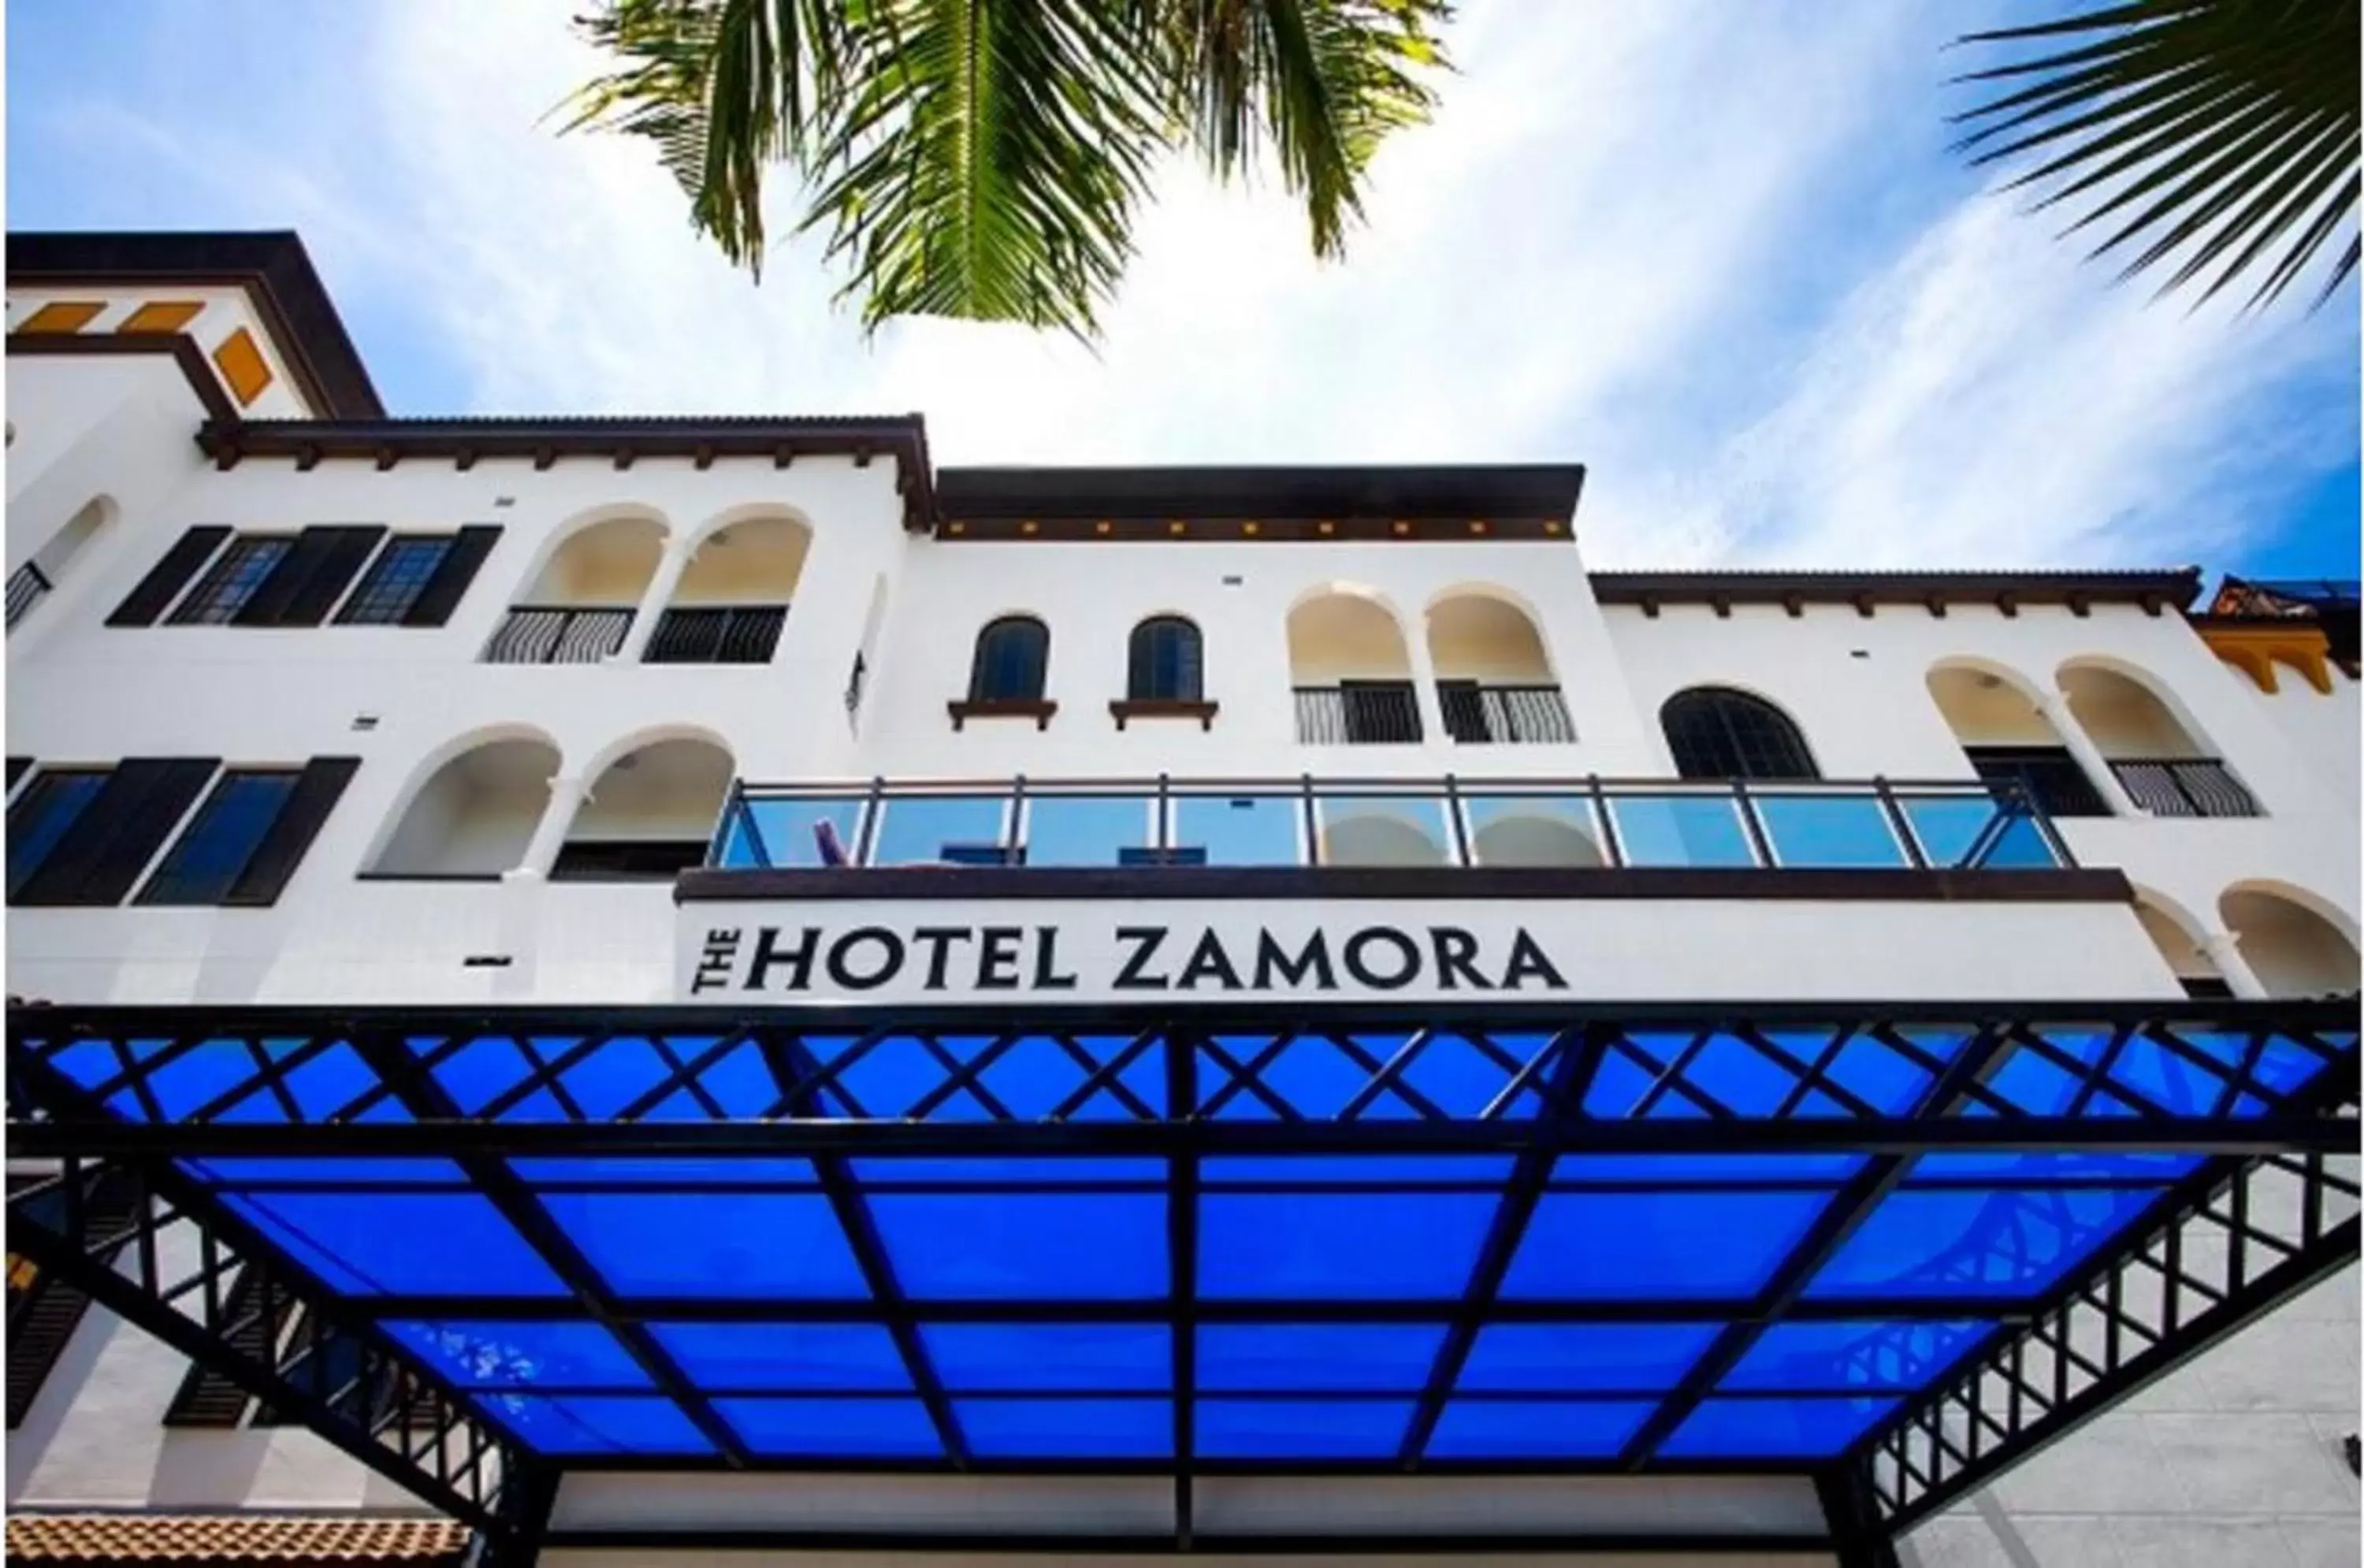 Facade/entrance in The Hotel Zamora